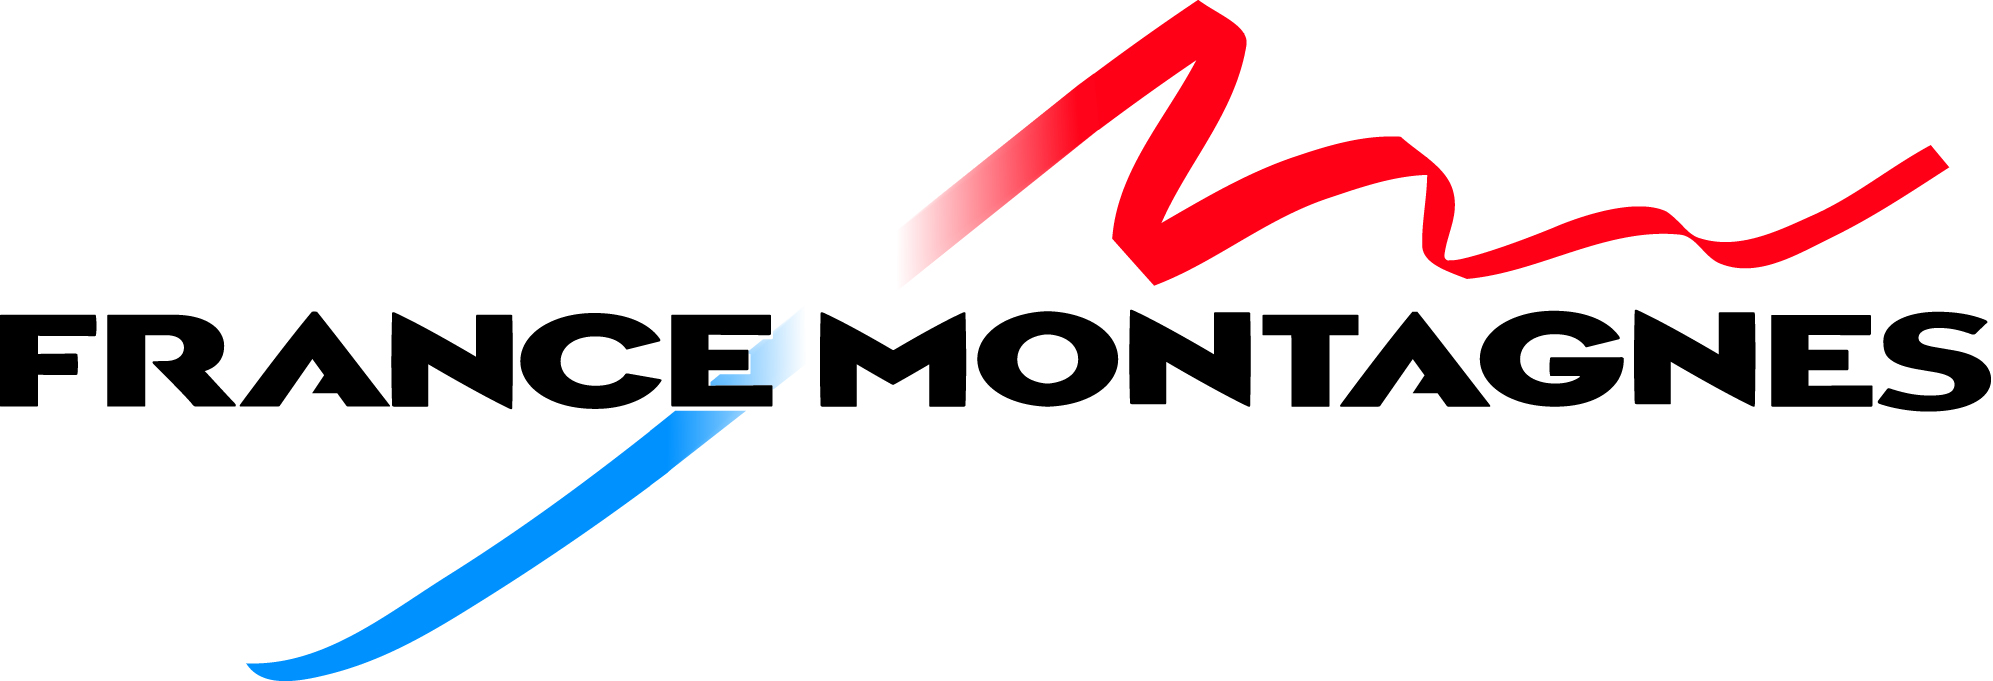 France Montagnes logo